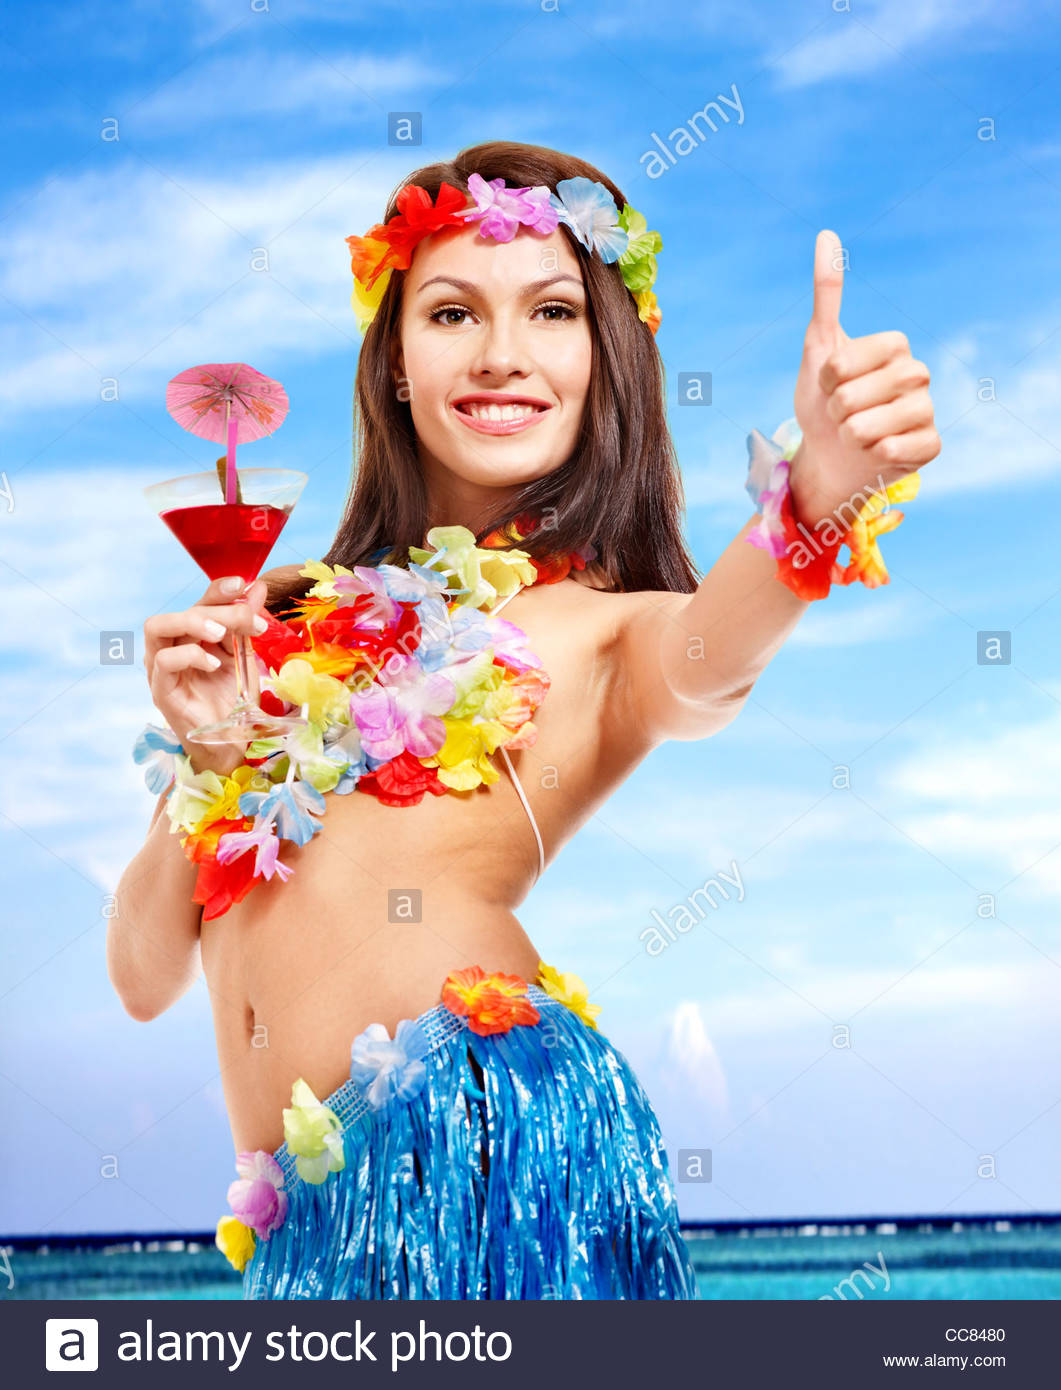 girl-in-bikini-drink-juice-on-beach-CC8480.jpg